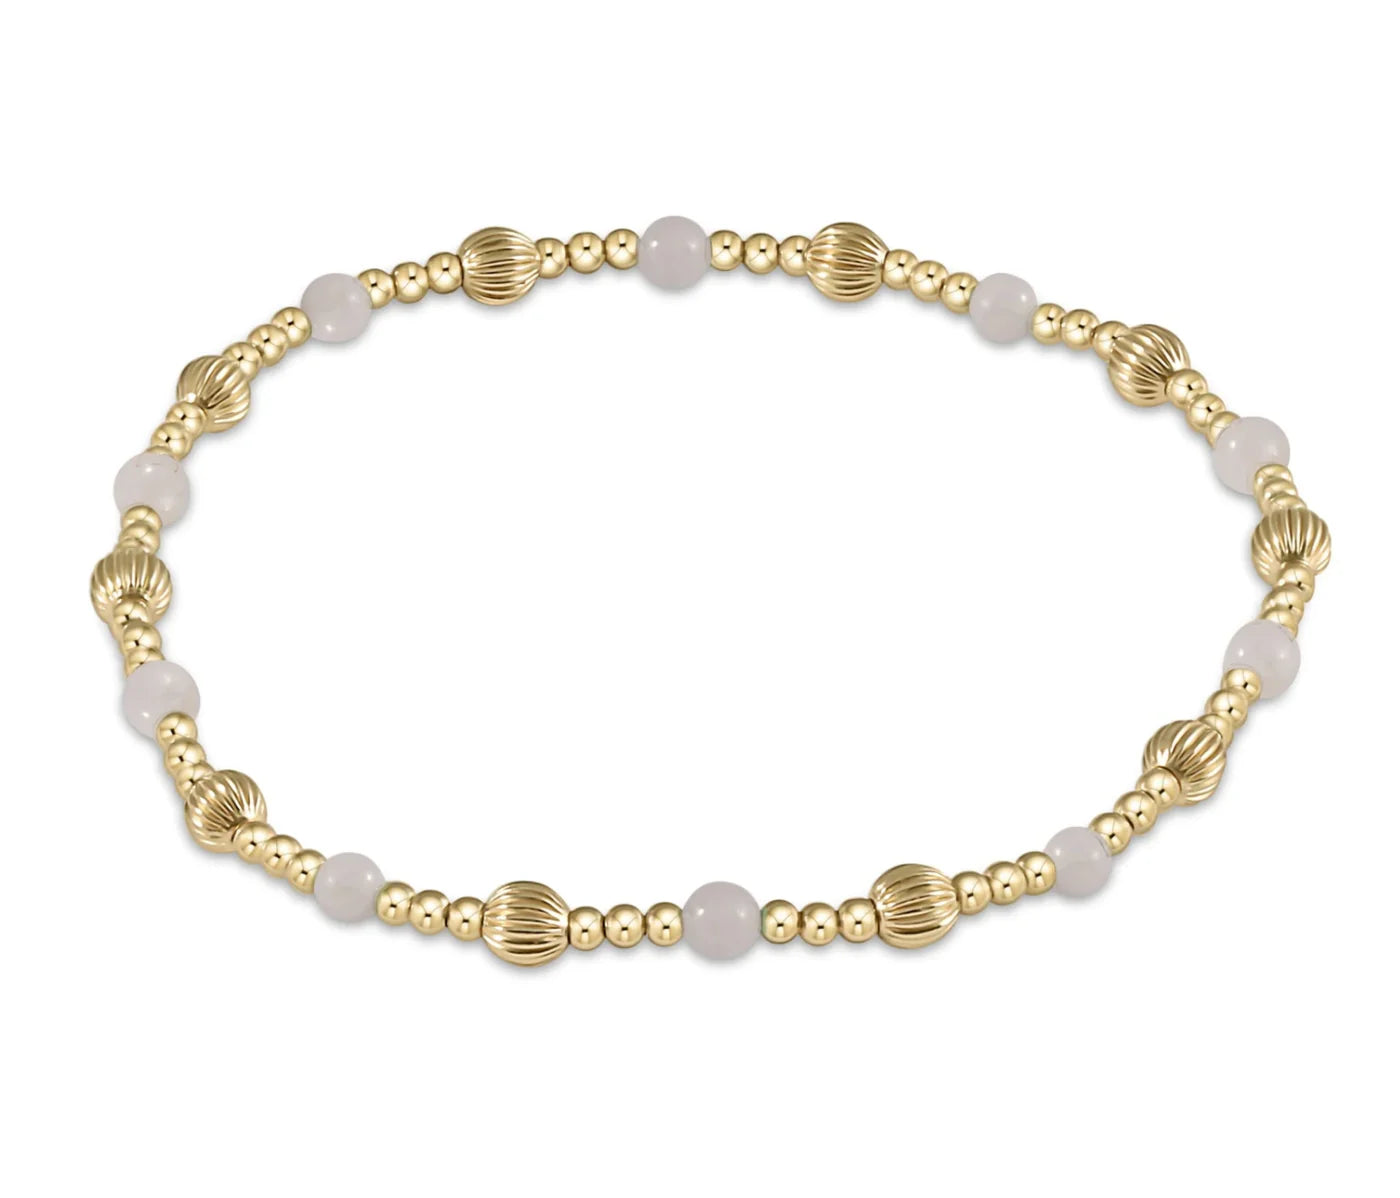 enewton Dignity & Sincerity Pattern Gold & Gemstone Bracelet